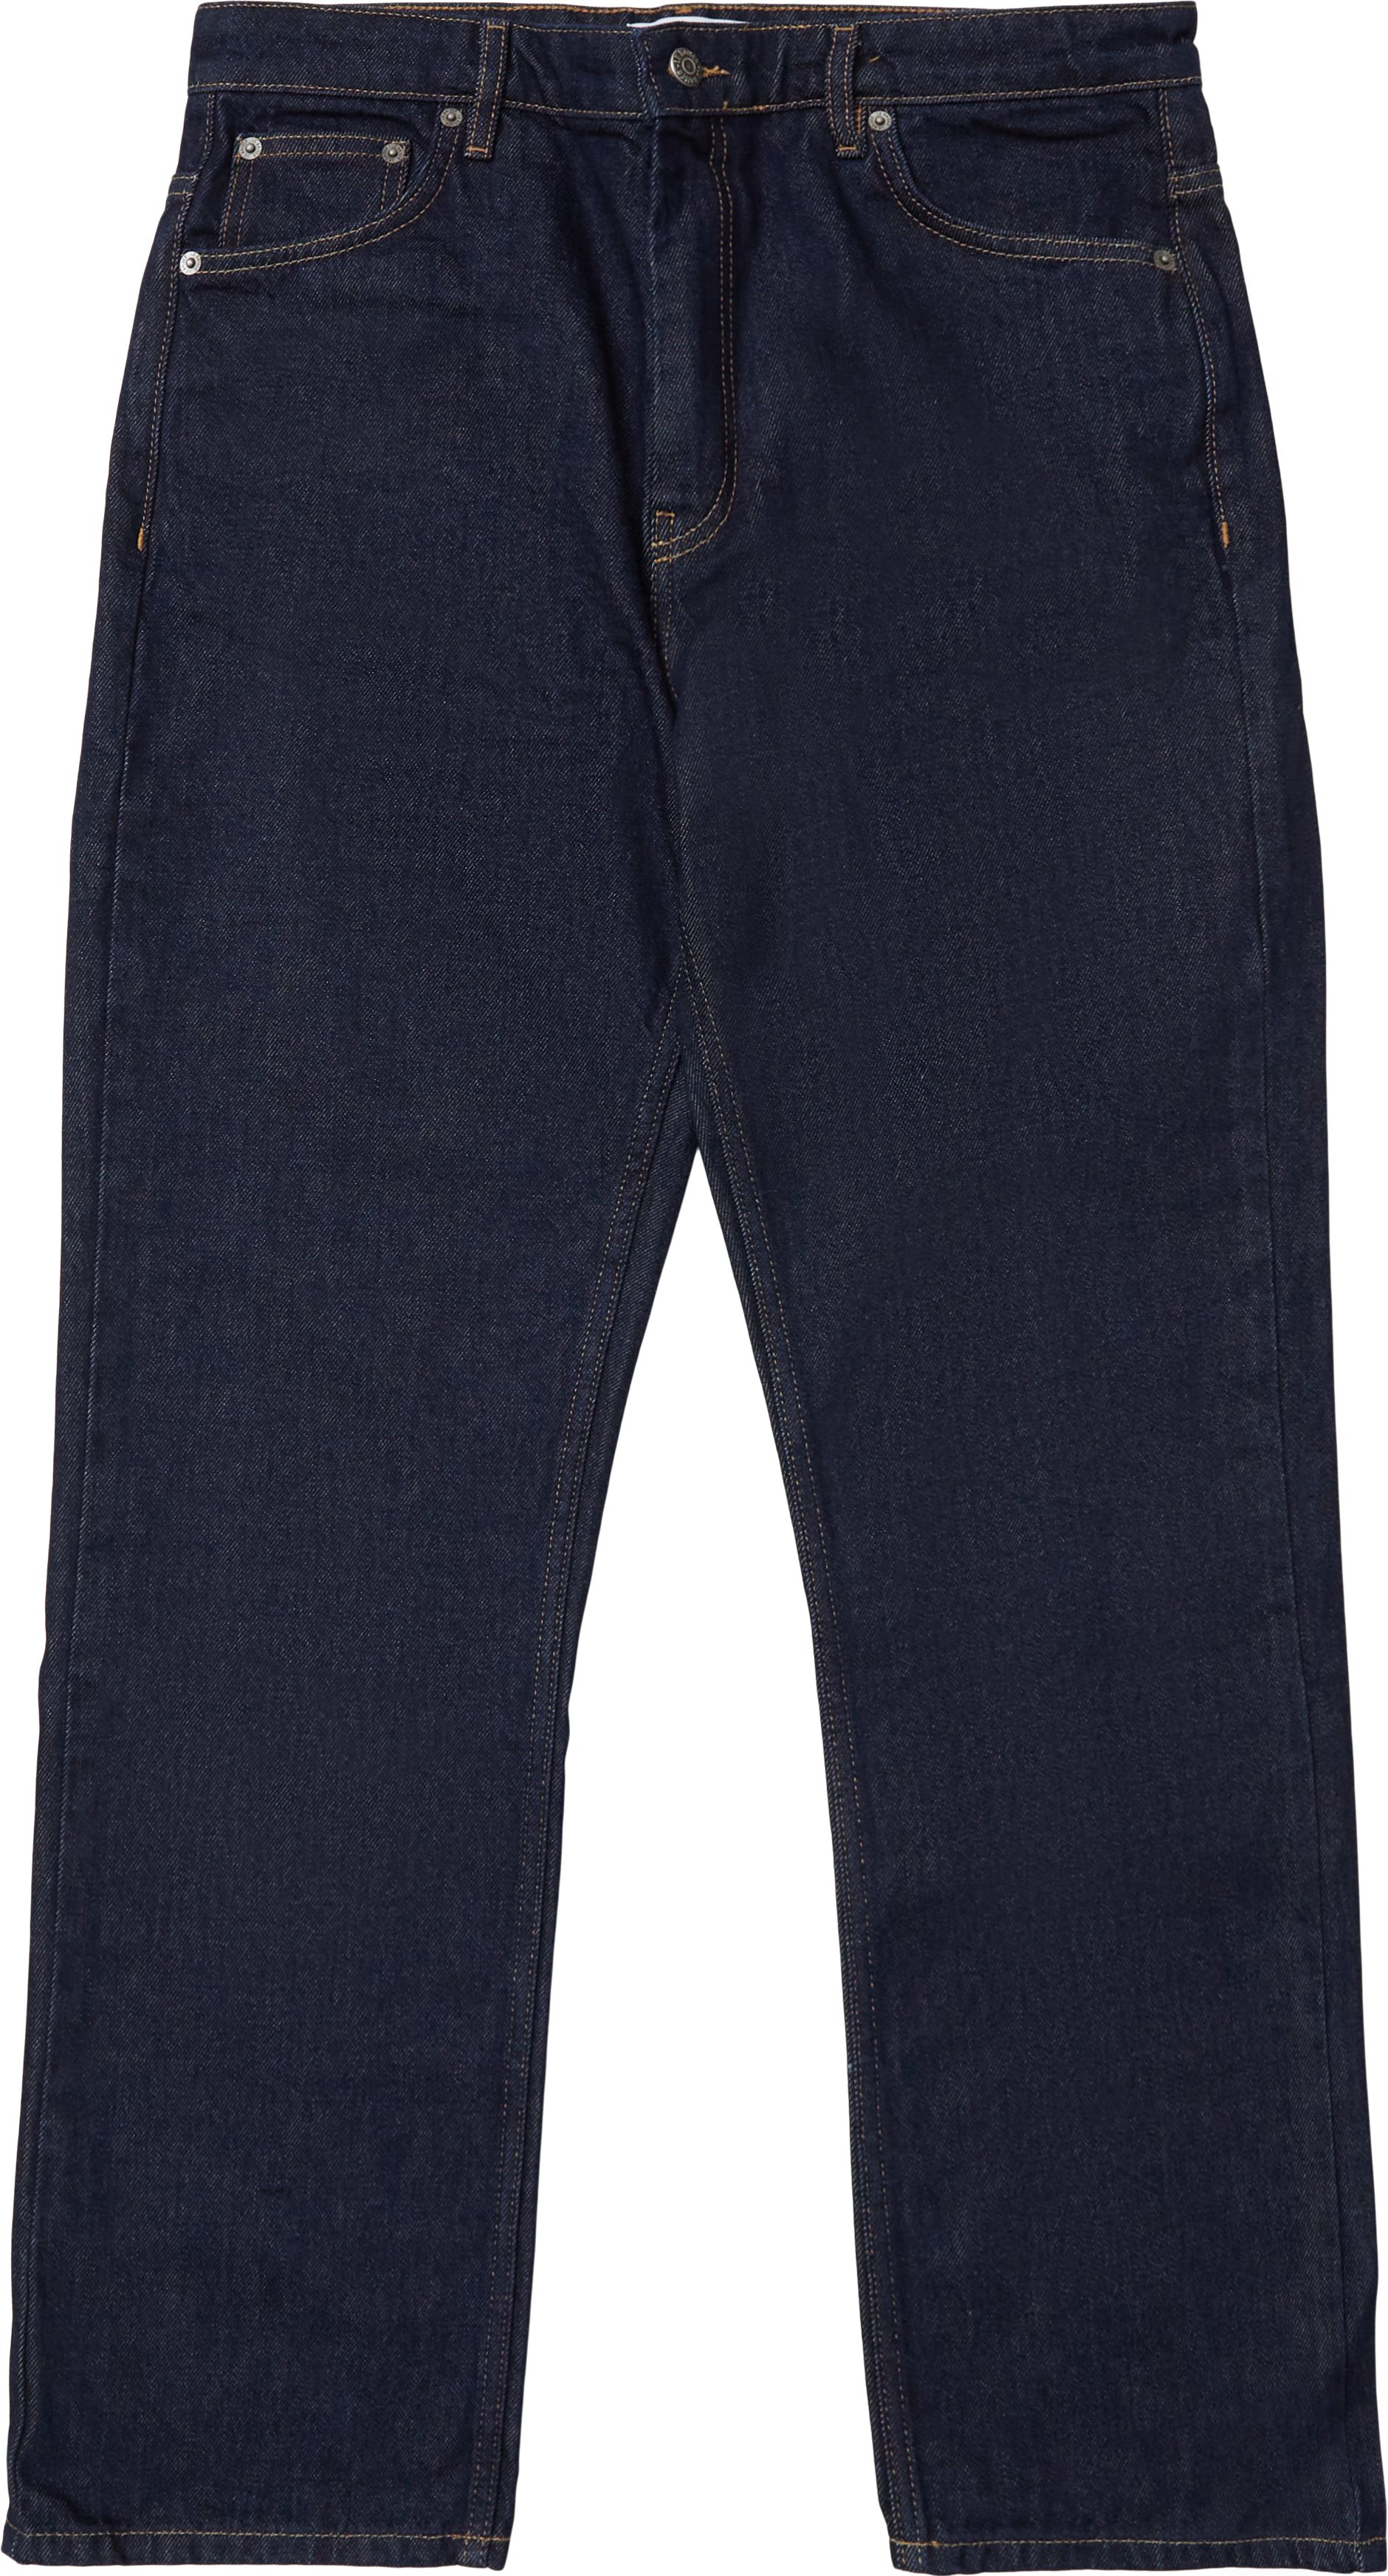 Pessac Midnight Blue Jeans - Jeans - Straight fit - Denim